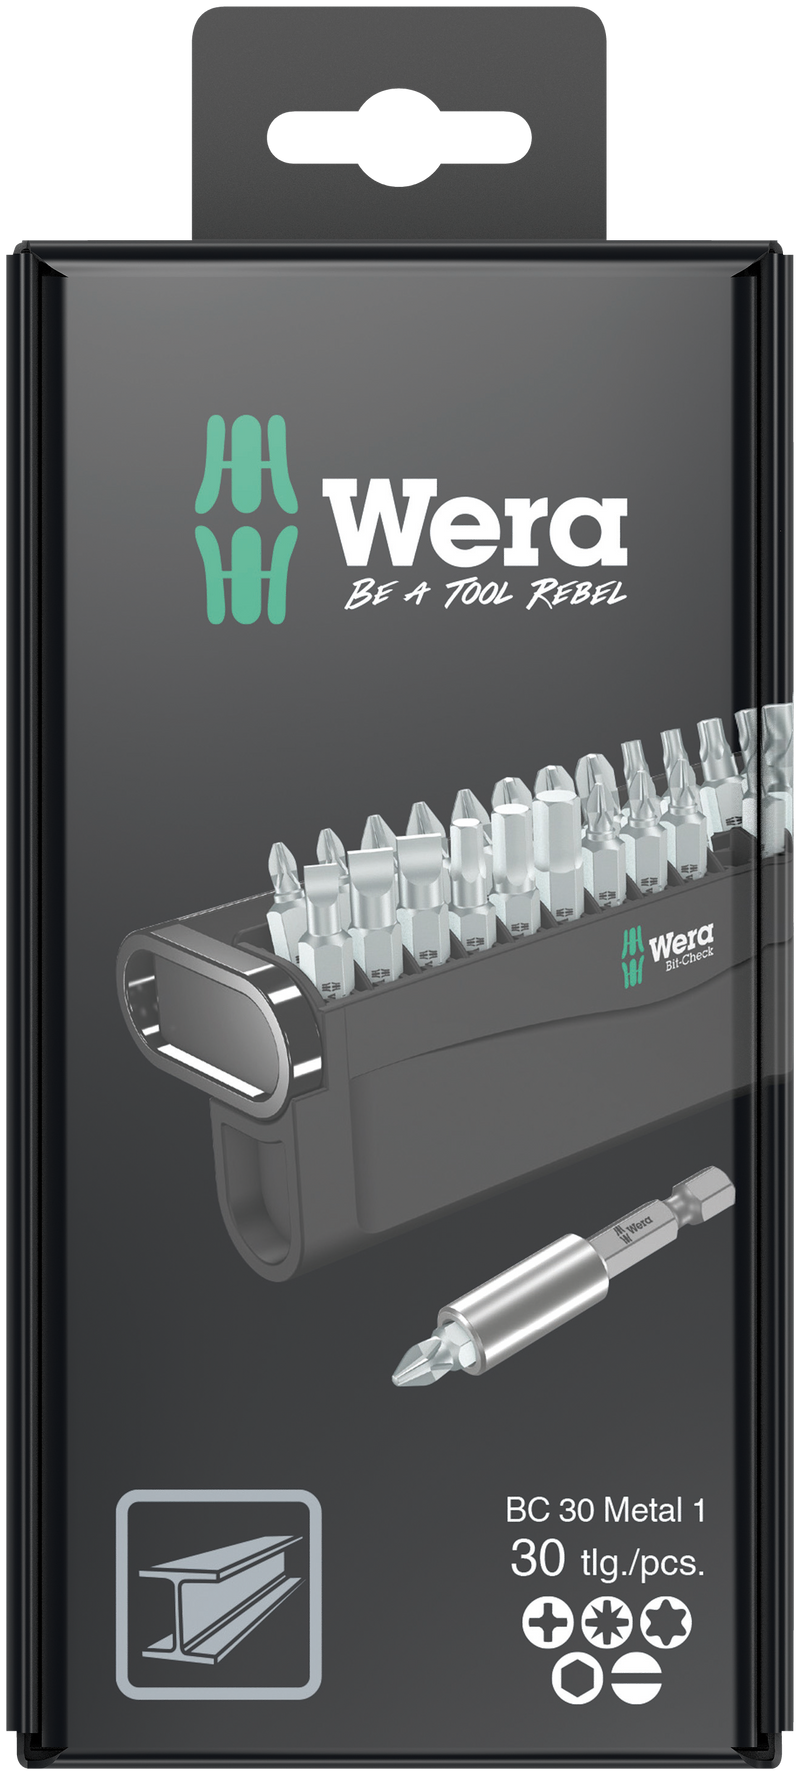 Wera Bit-Check 30 Metal 1 SB, 05057440001